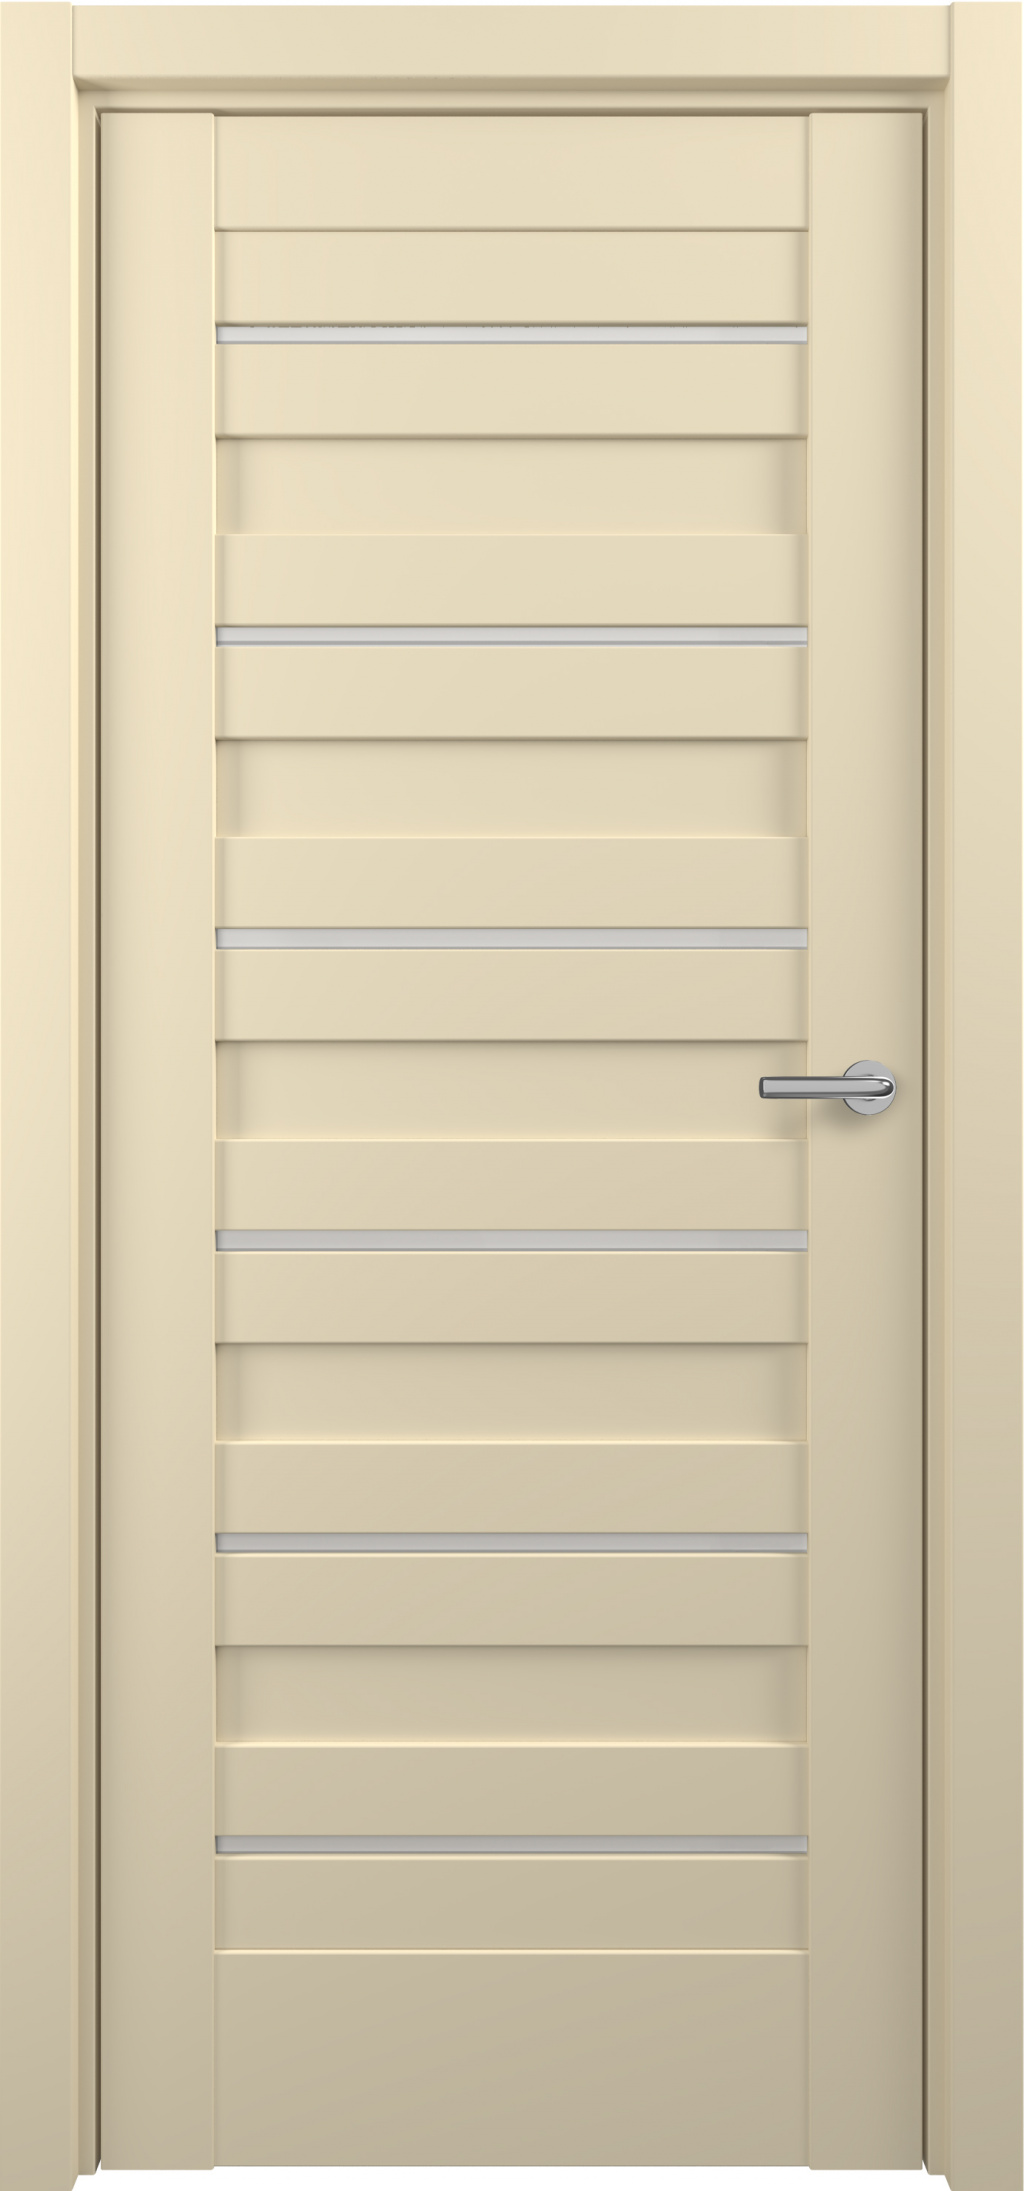 Zadoor Межкомнатная дверь S17, арт. 15824 - фото №1